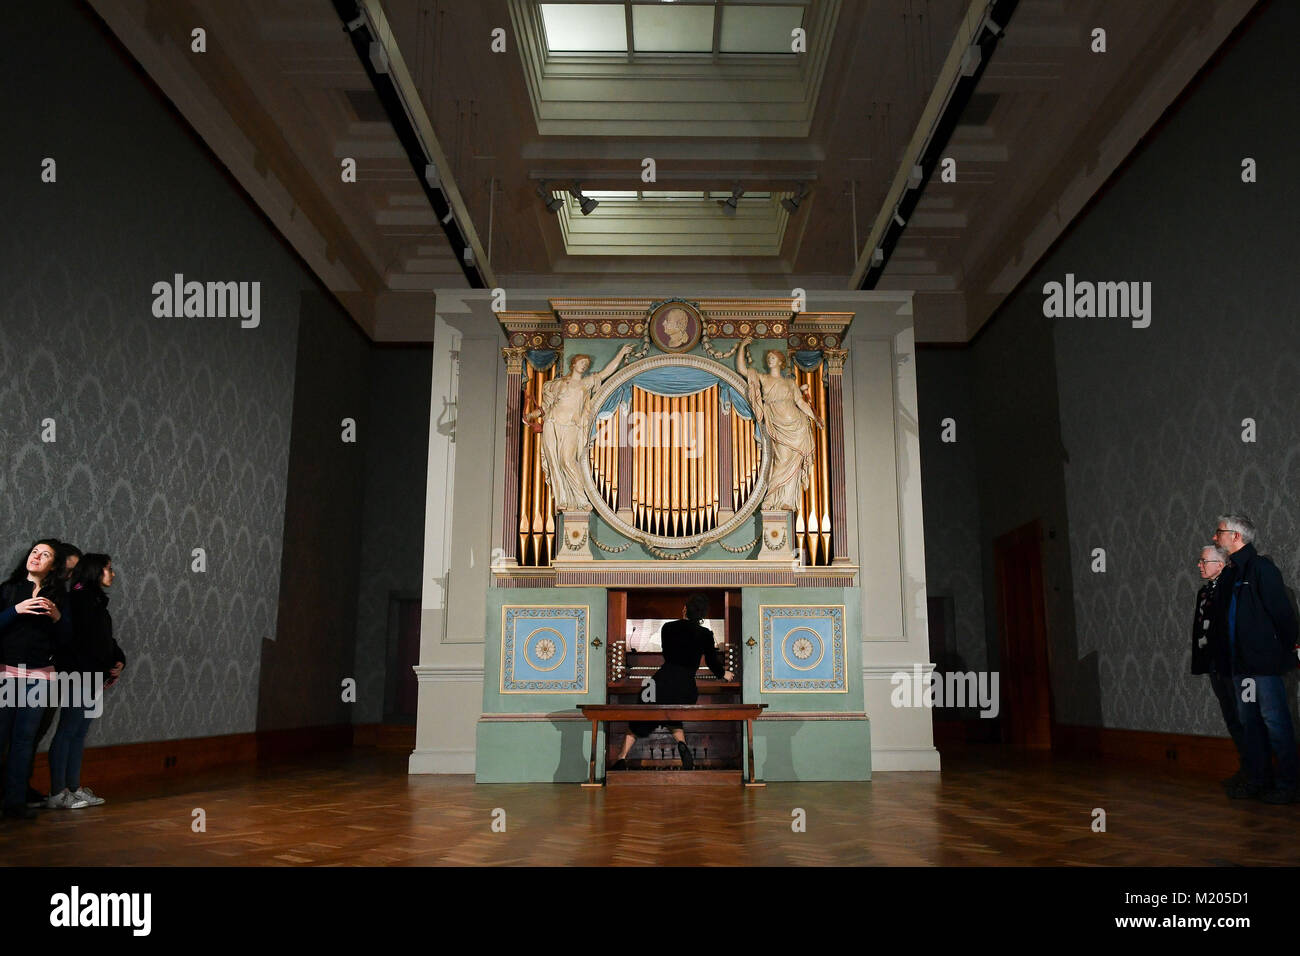 Un organiste interprète &Ograve;il Cielo dans una stanza&Oaic; (le ciel dans une salle) sur l'orgue Sir Watkins Williams Wynn 1774 dans la galerie d'art britannique du XVIIIe siècle du Musée national du pays de Galles dans le cadre d'une exposition de l'artiste Ragnar Kjartansson, intitulé « le ciel dans une salle », Qui voit une série d'organistes tournants jouer constamment sur une période de cinq semaines, pendant cinq heures par jour, du 3 février au 11 mars. Banque D'Images